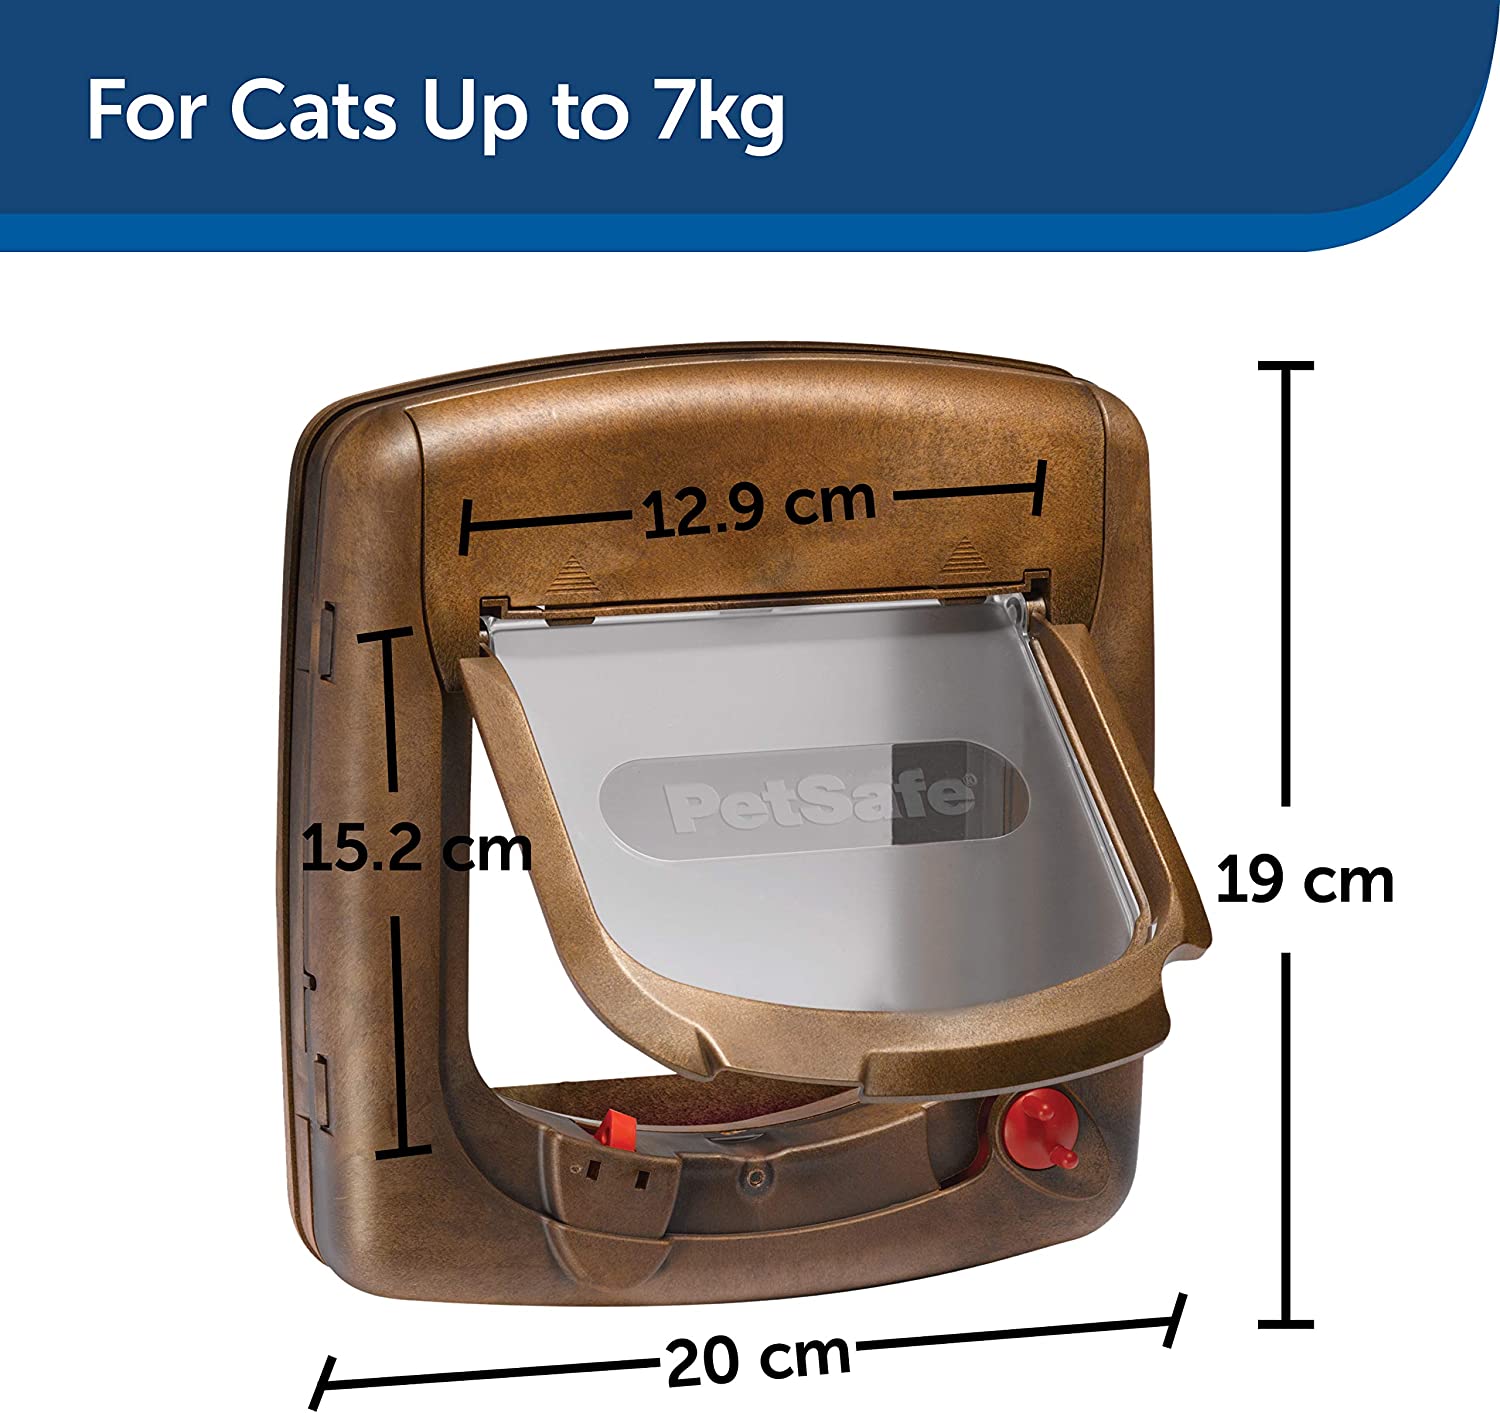  فلپ گربه مغناطیسی Staywell Deluxe دارای درب مغناطیسی و خروجی کشش داخلی است که به عنوان عایق عمل می کند، در برابر بادهای شدید مقاومت می کند و گرما را در خانه شما حفظ می کند.